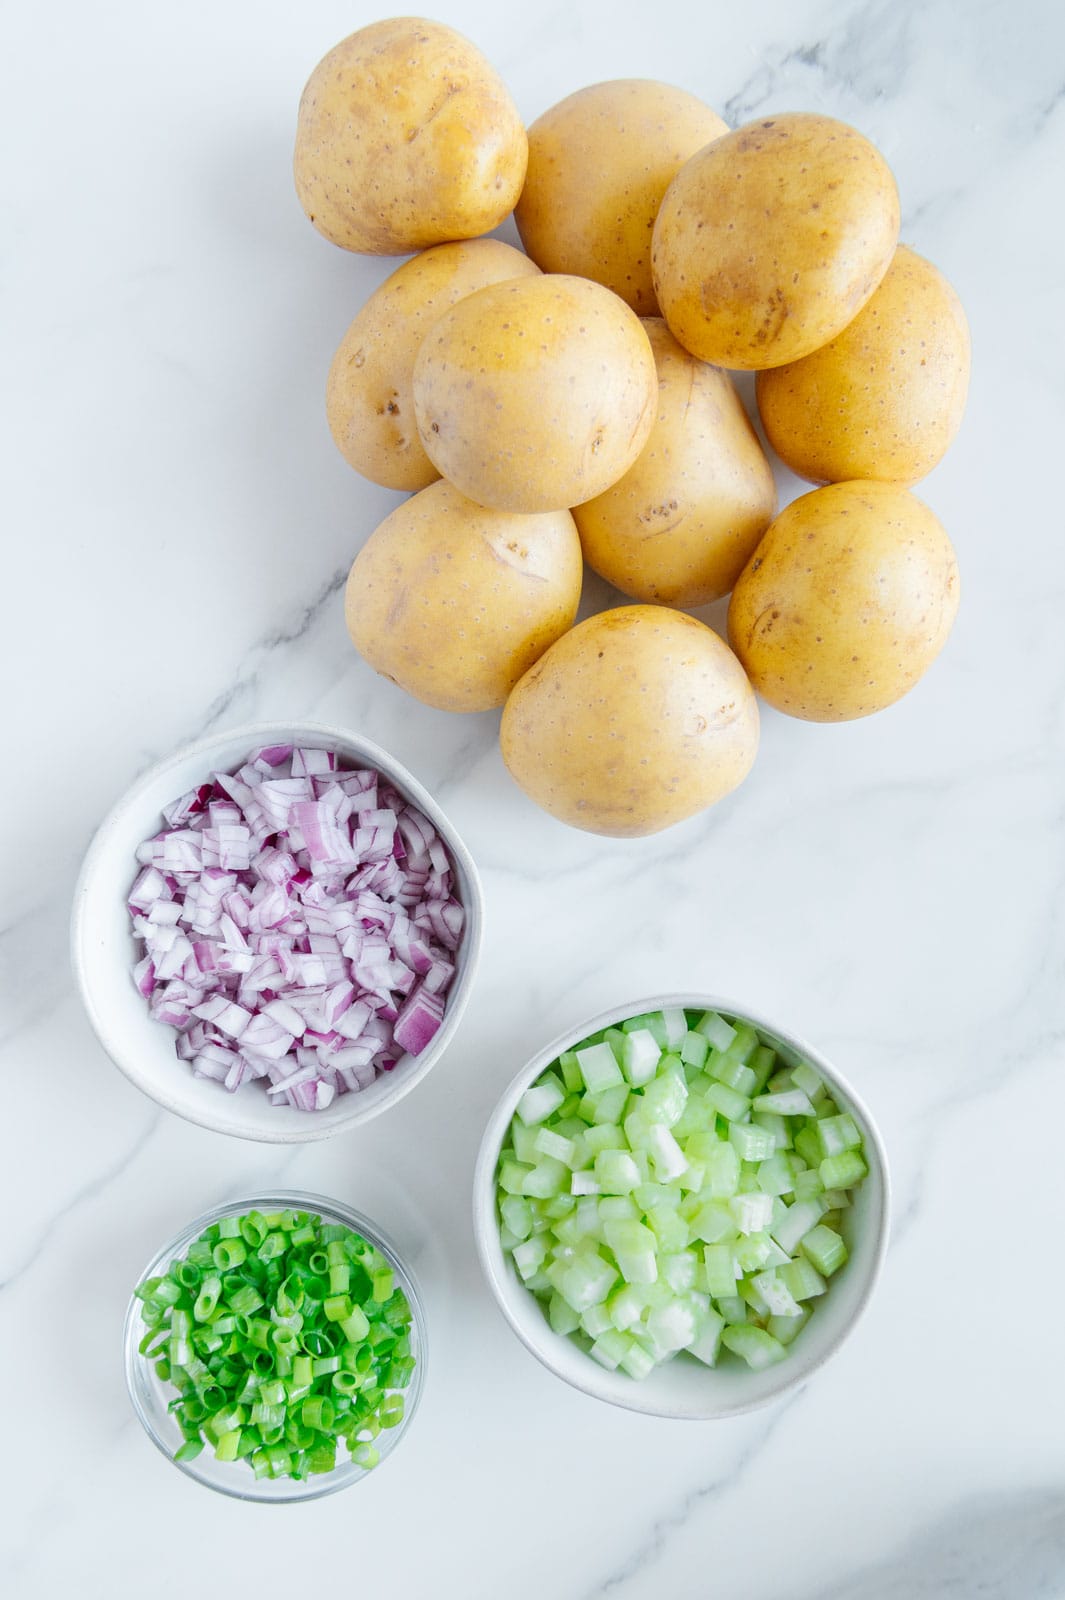 Ingredients to make a vegan potato salad.